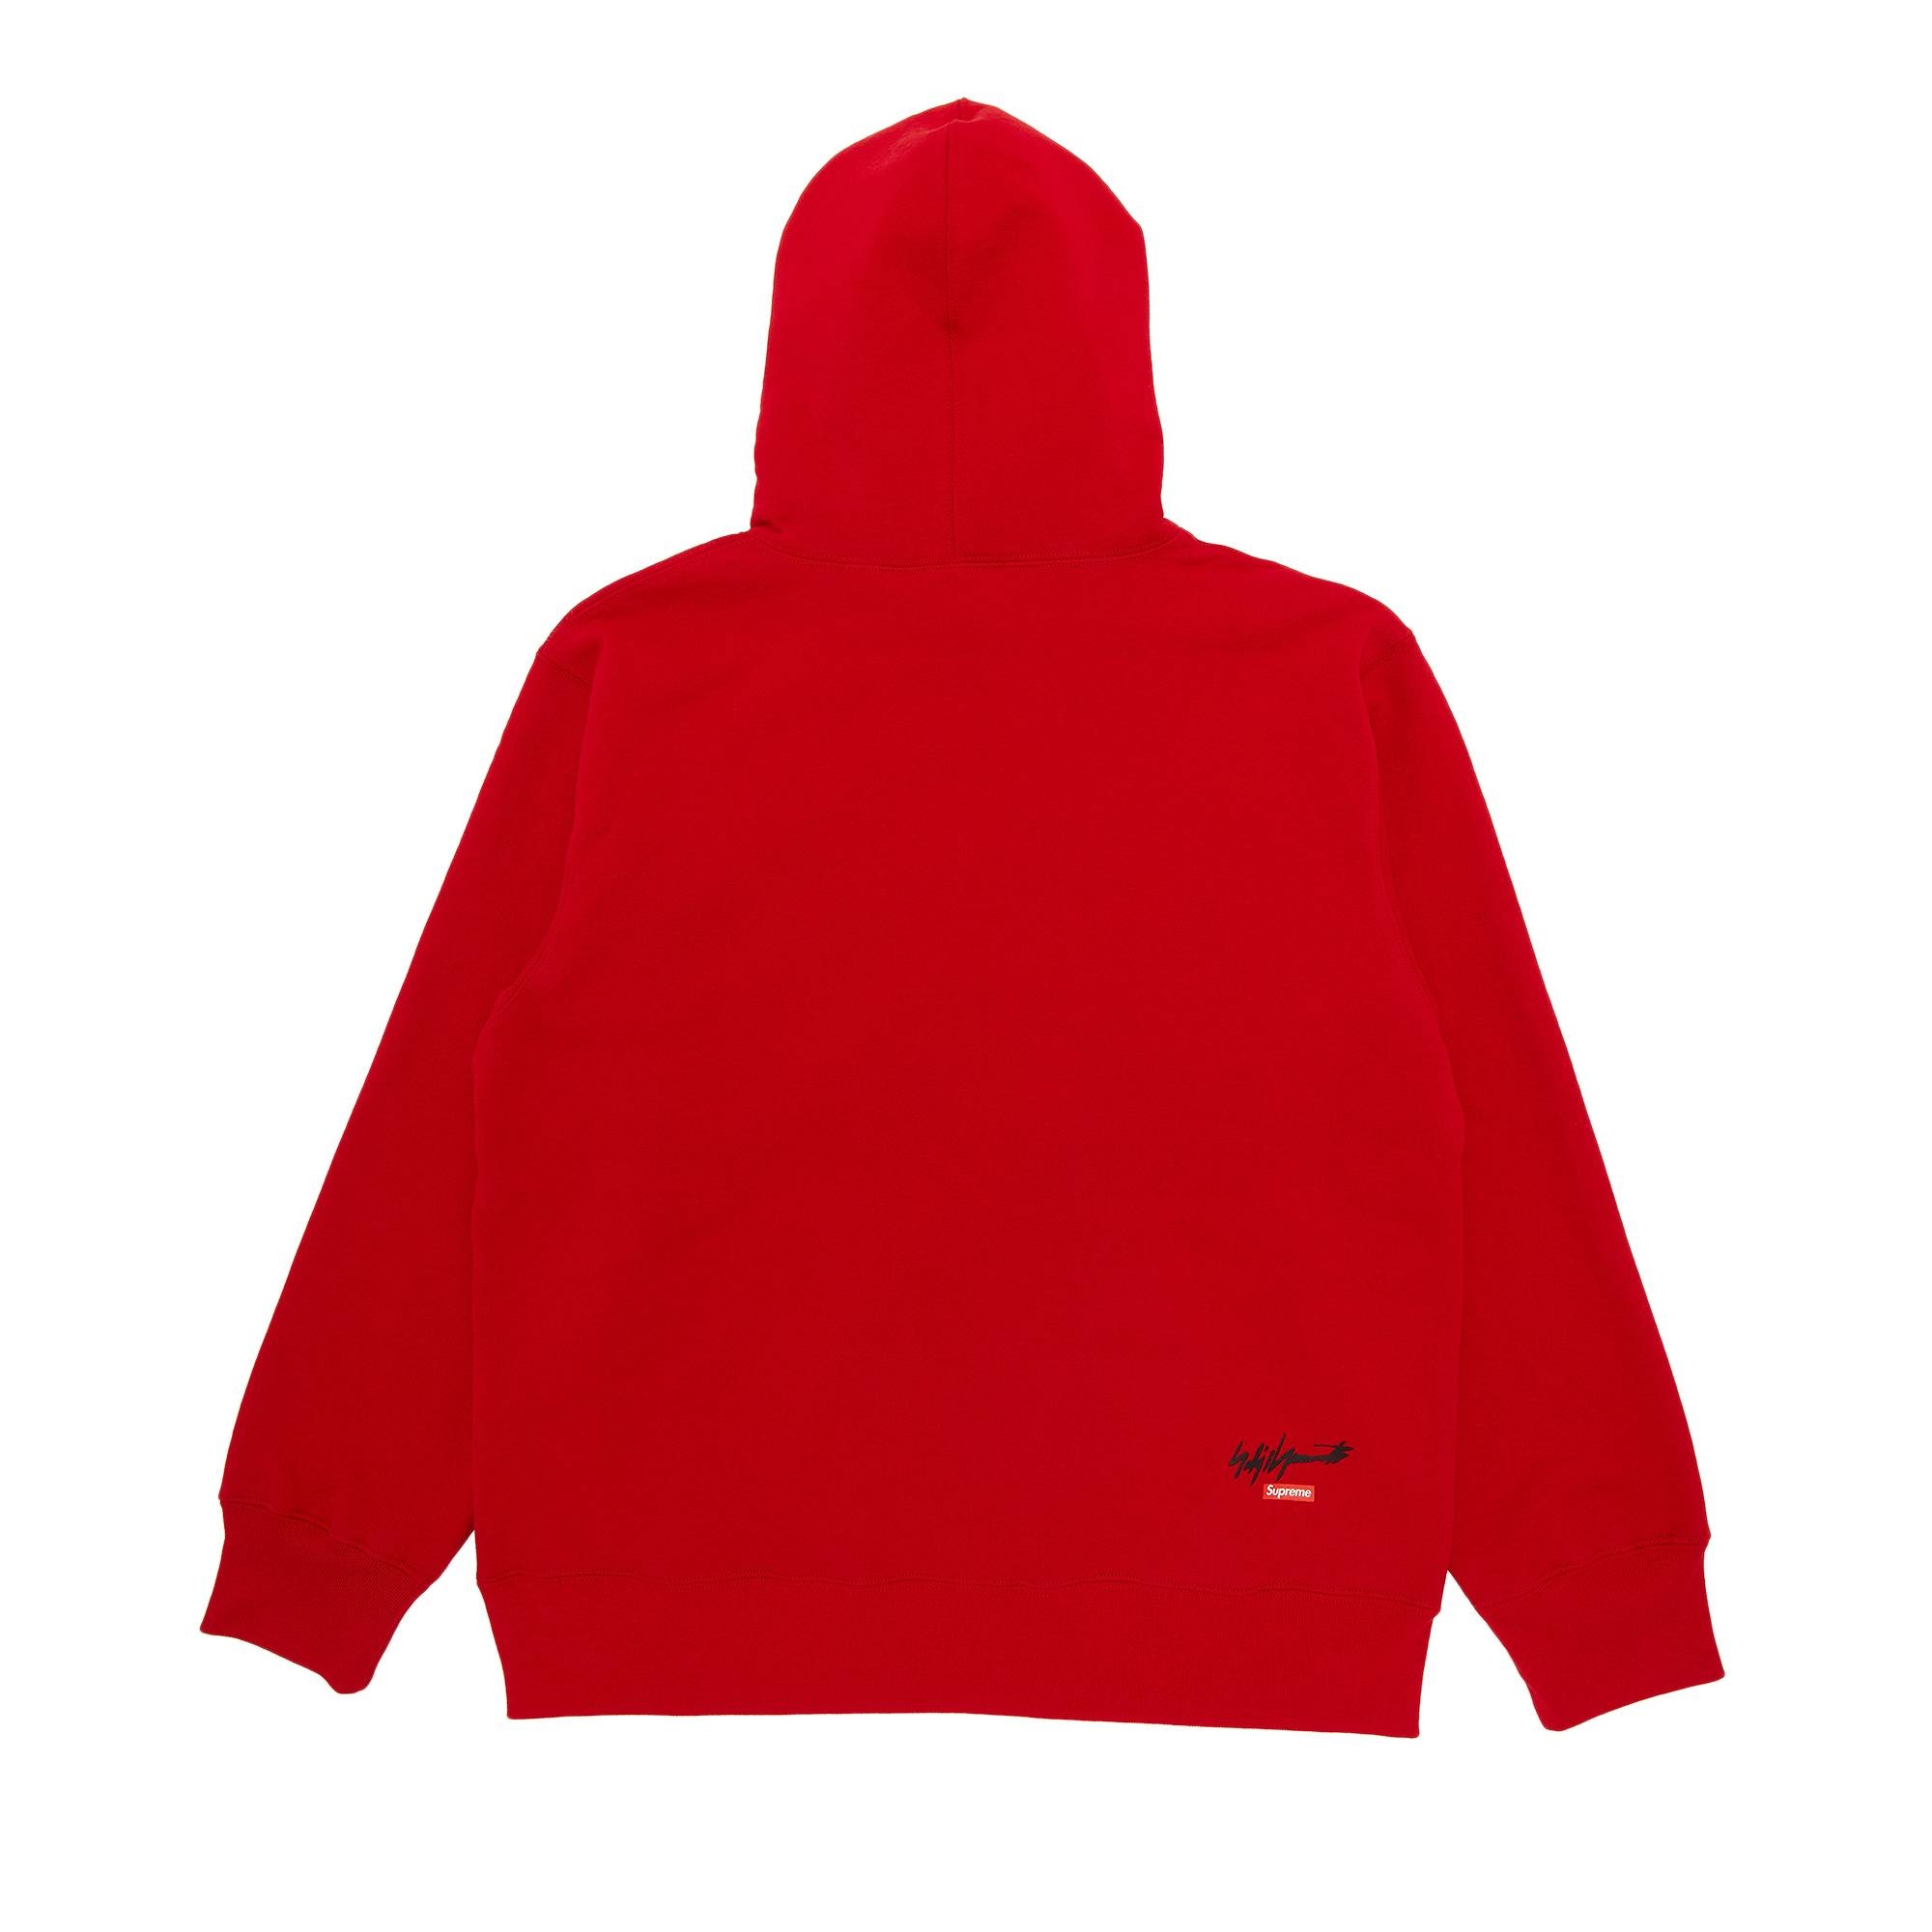 Supreme x Yohji Yamamoto x TEKKEN Hooded Sweatshirt 'Red' - 2